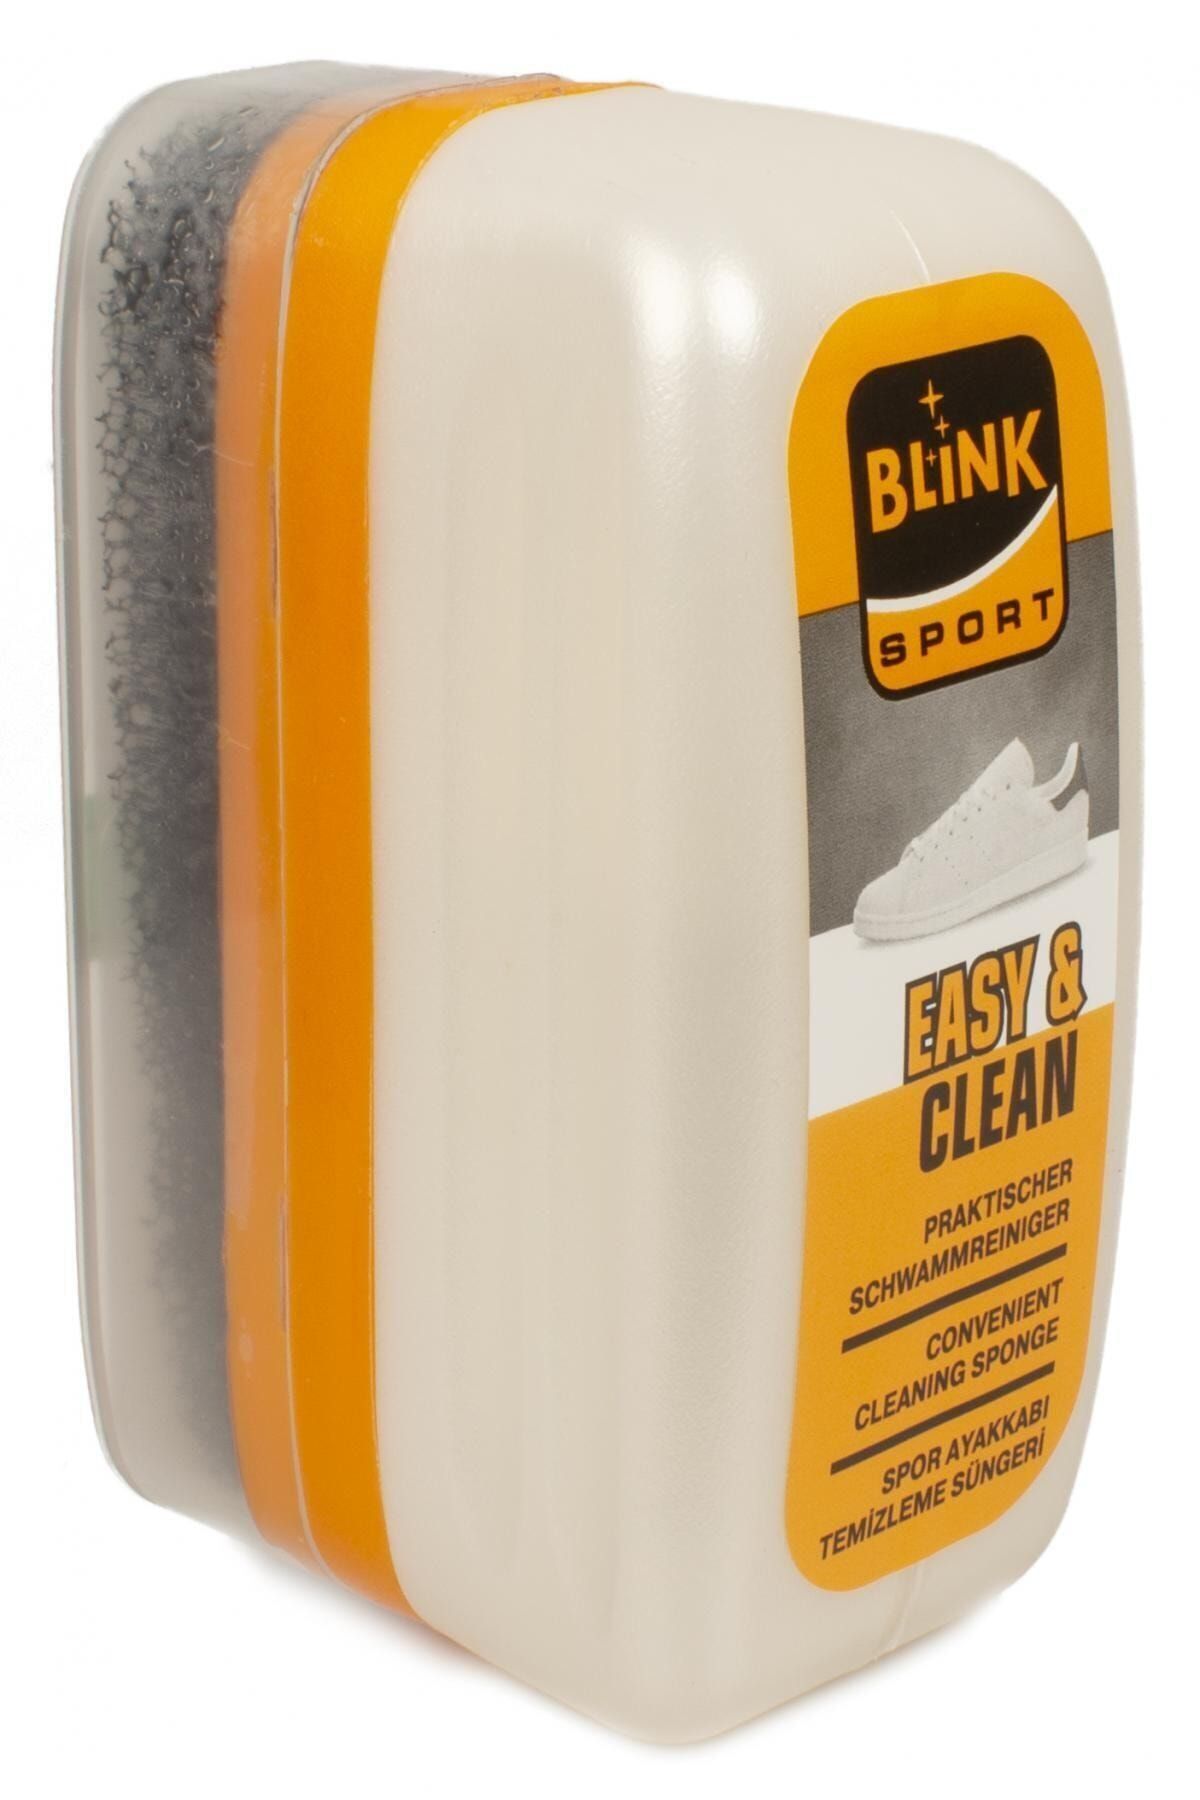 Blink Gri Defensive Easy&clean Spor Ayakkabı Temizleme Süngeri D.8910